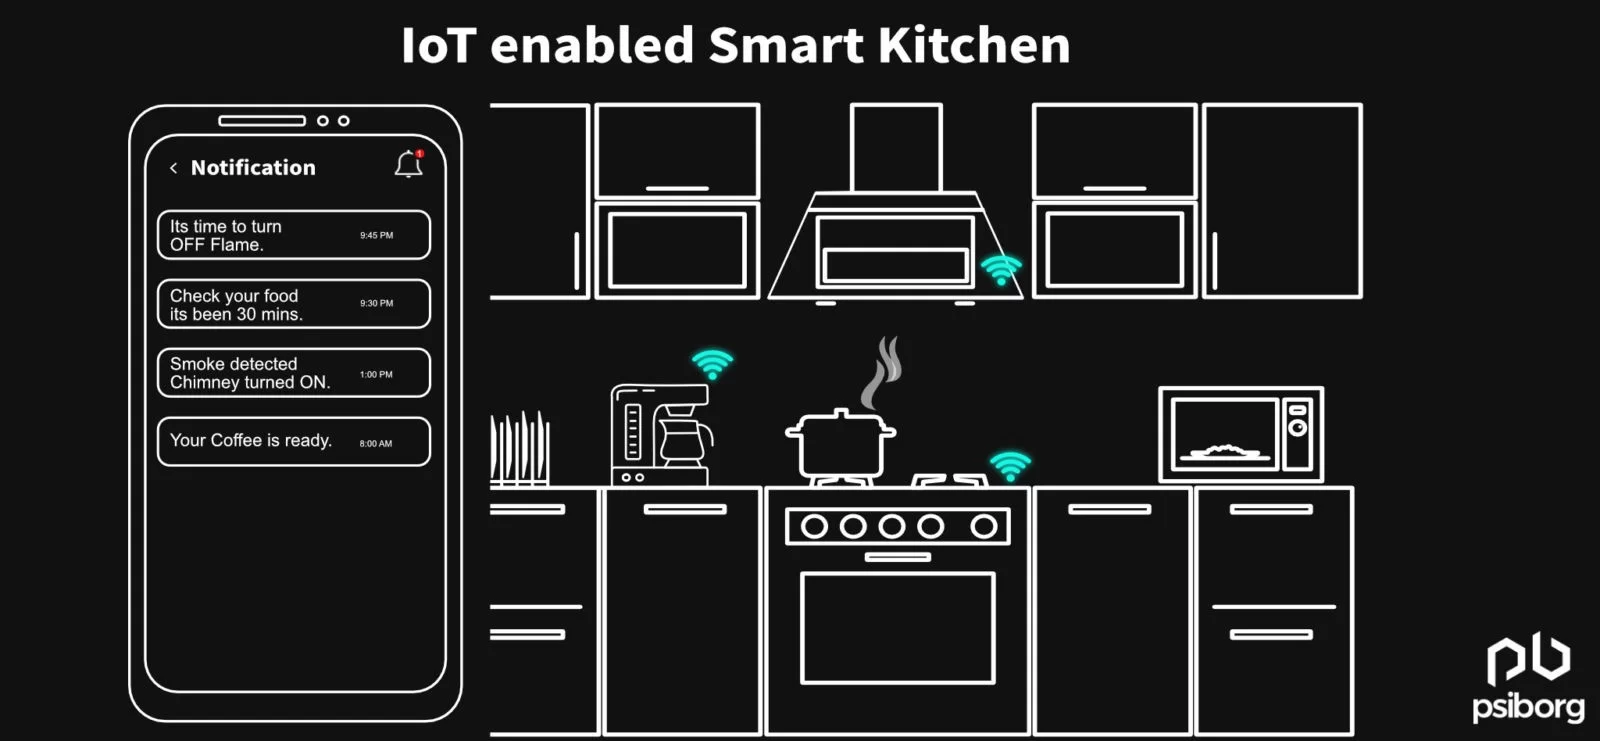 iot in the kitchen, smart kitchen, iot enabled kitchen